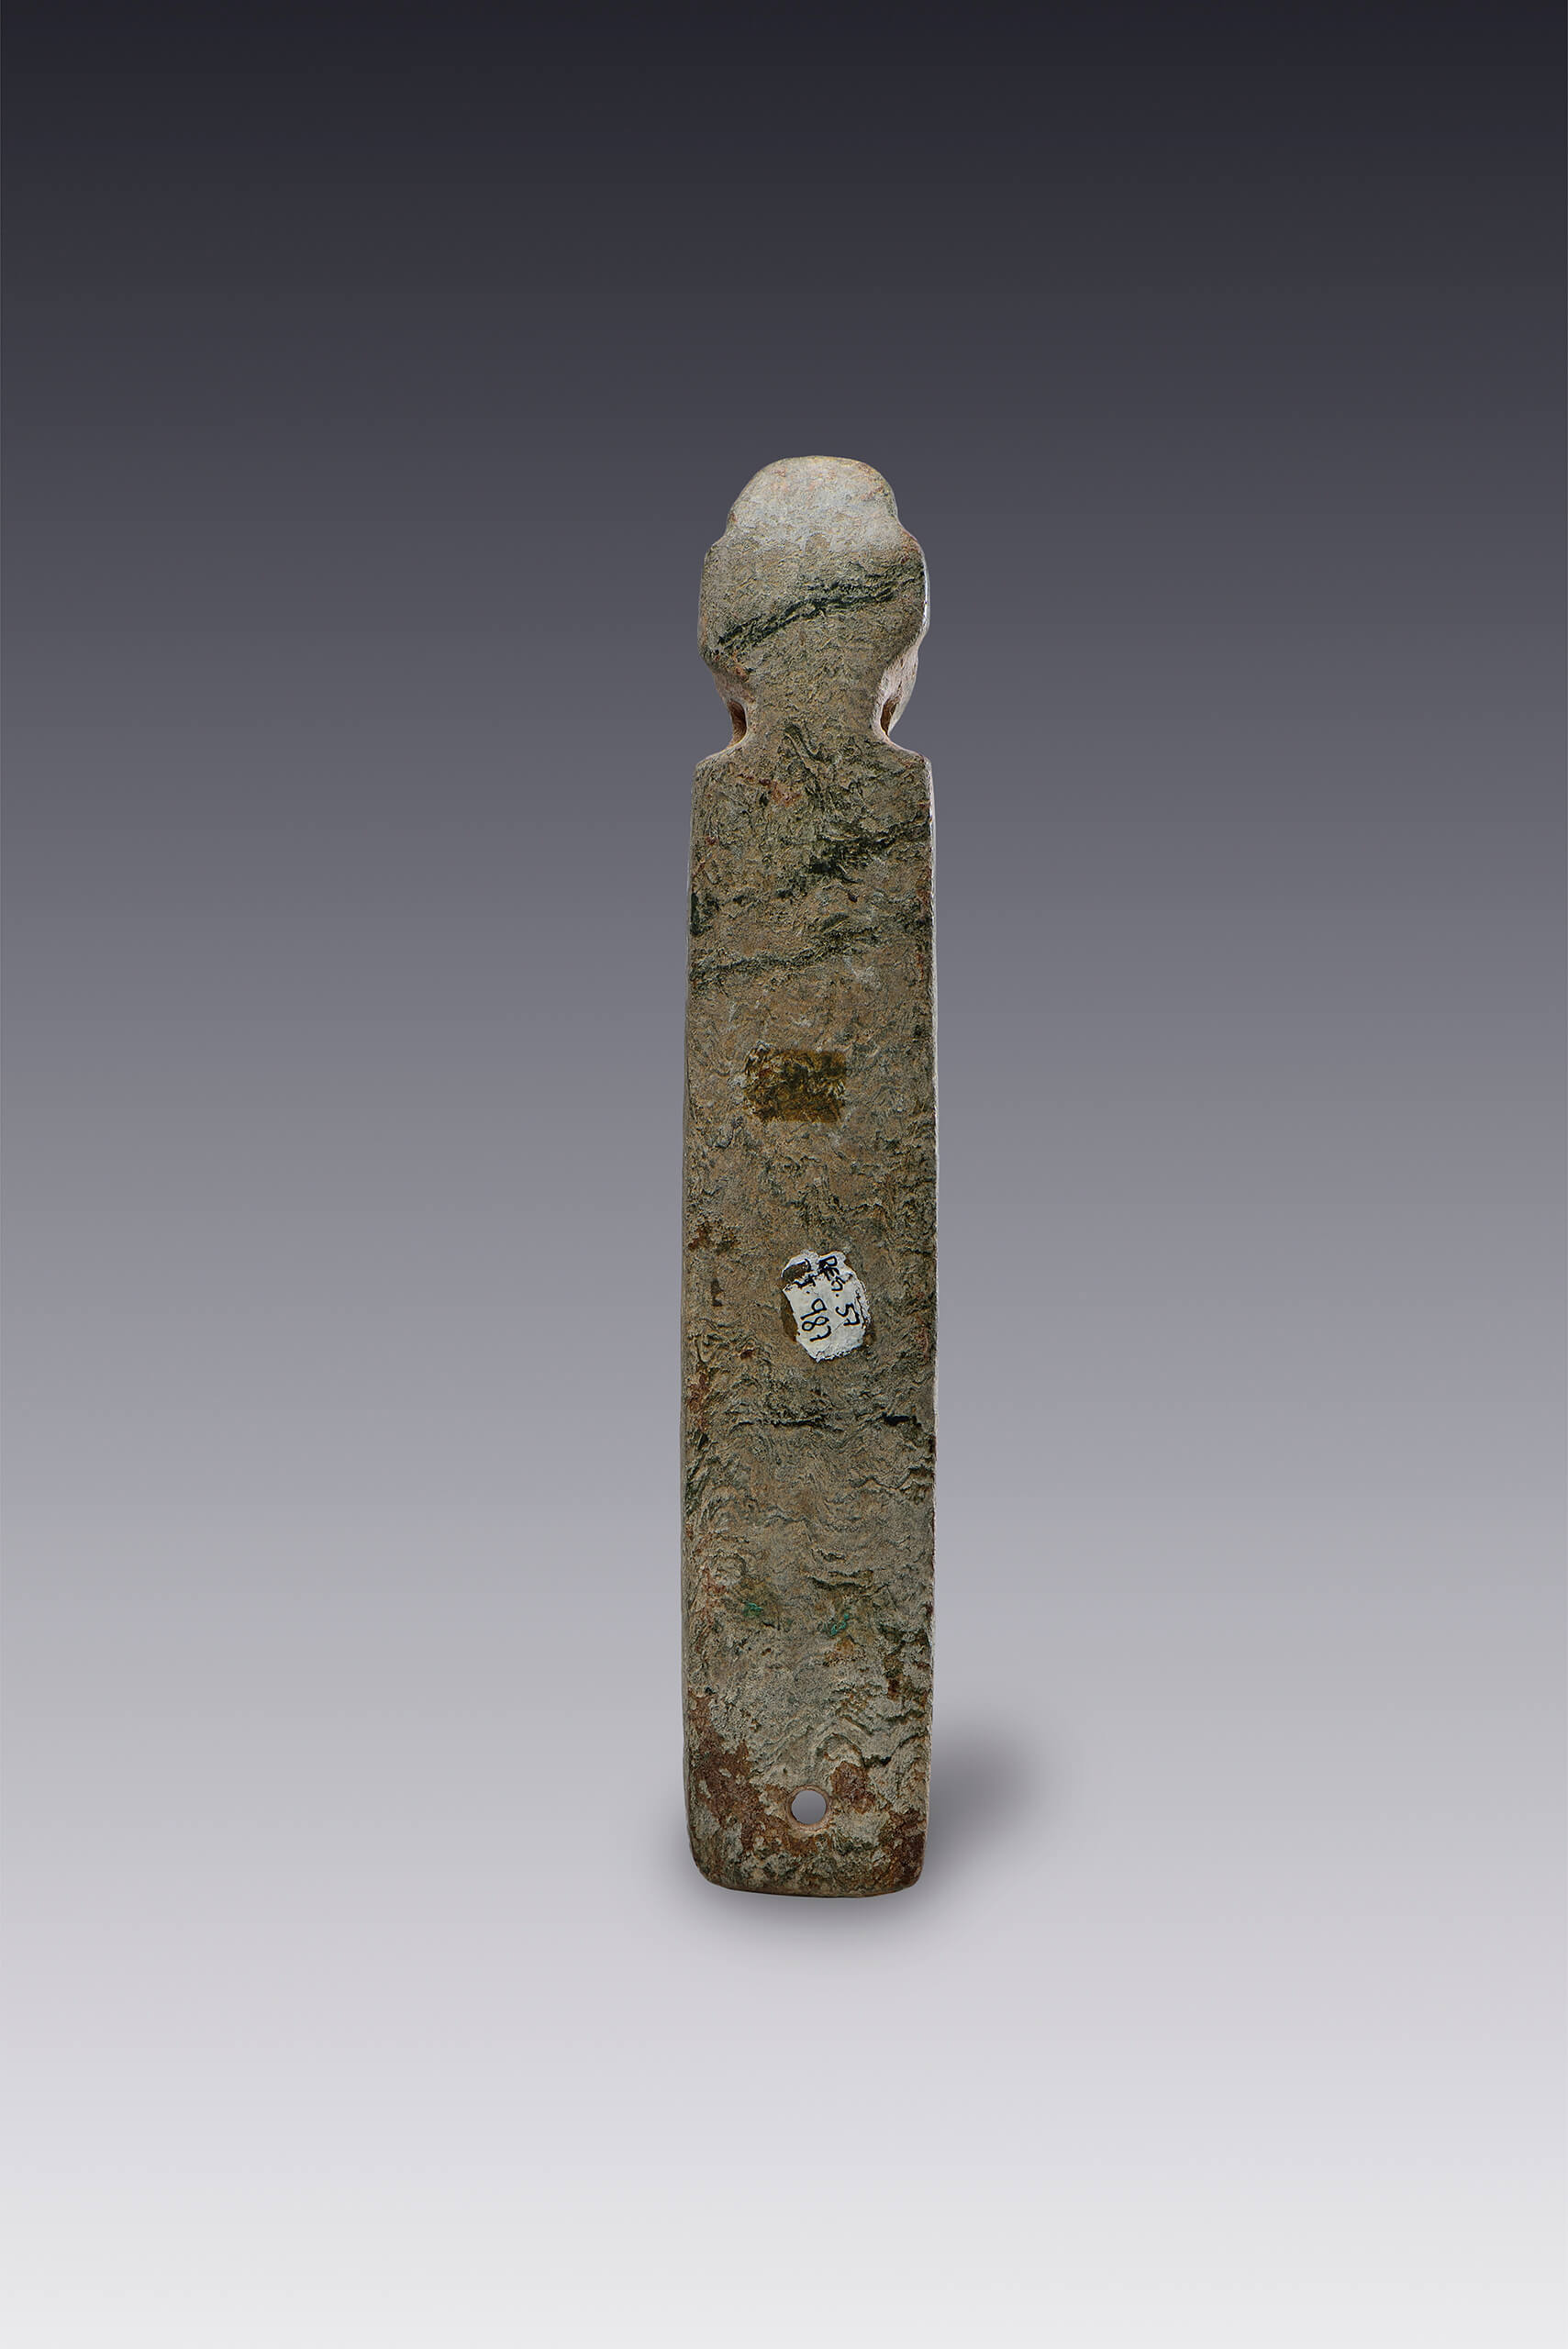 Litófono de ludimento decorado con cabeza antropomorfa | El México antiguo. Salas de Arte Prehispánico | Museo Amparo, Puebla